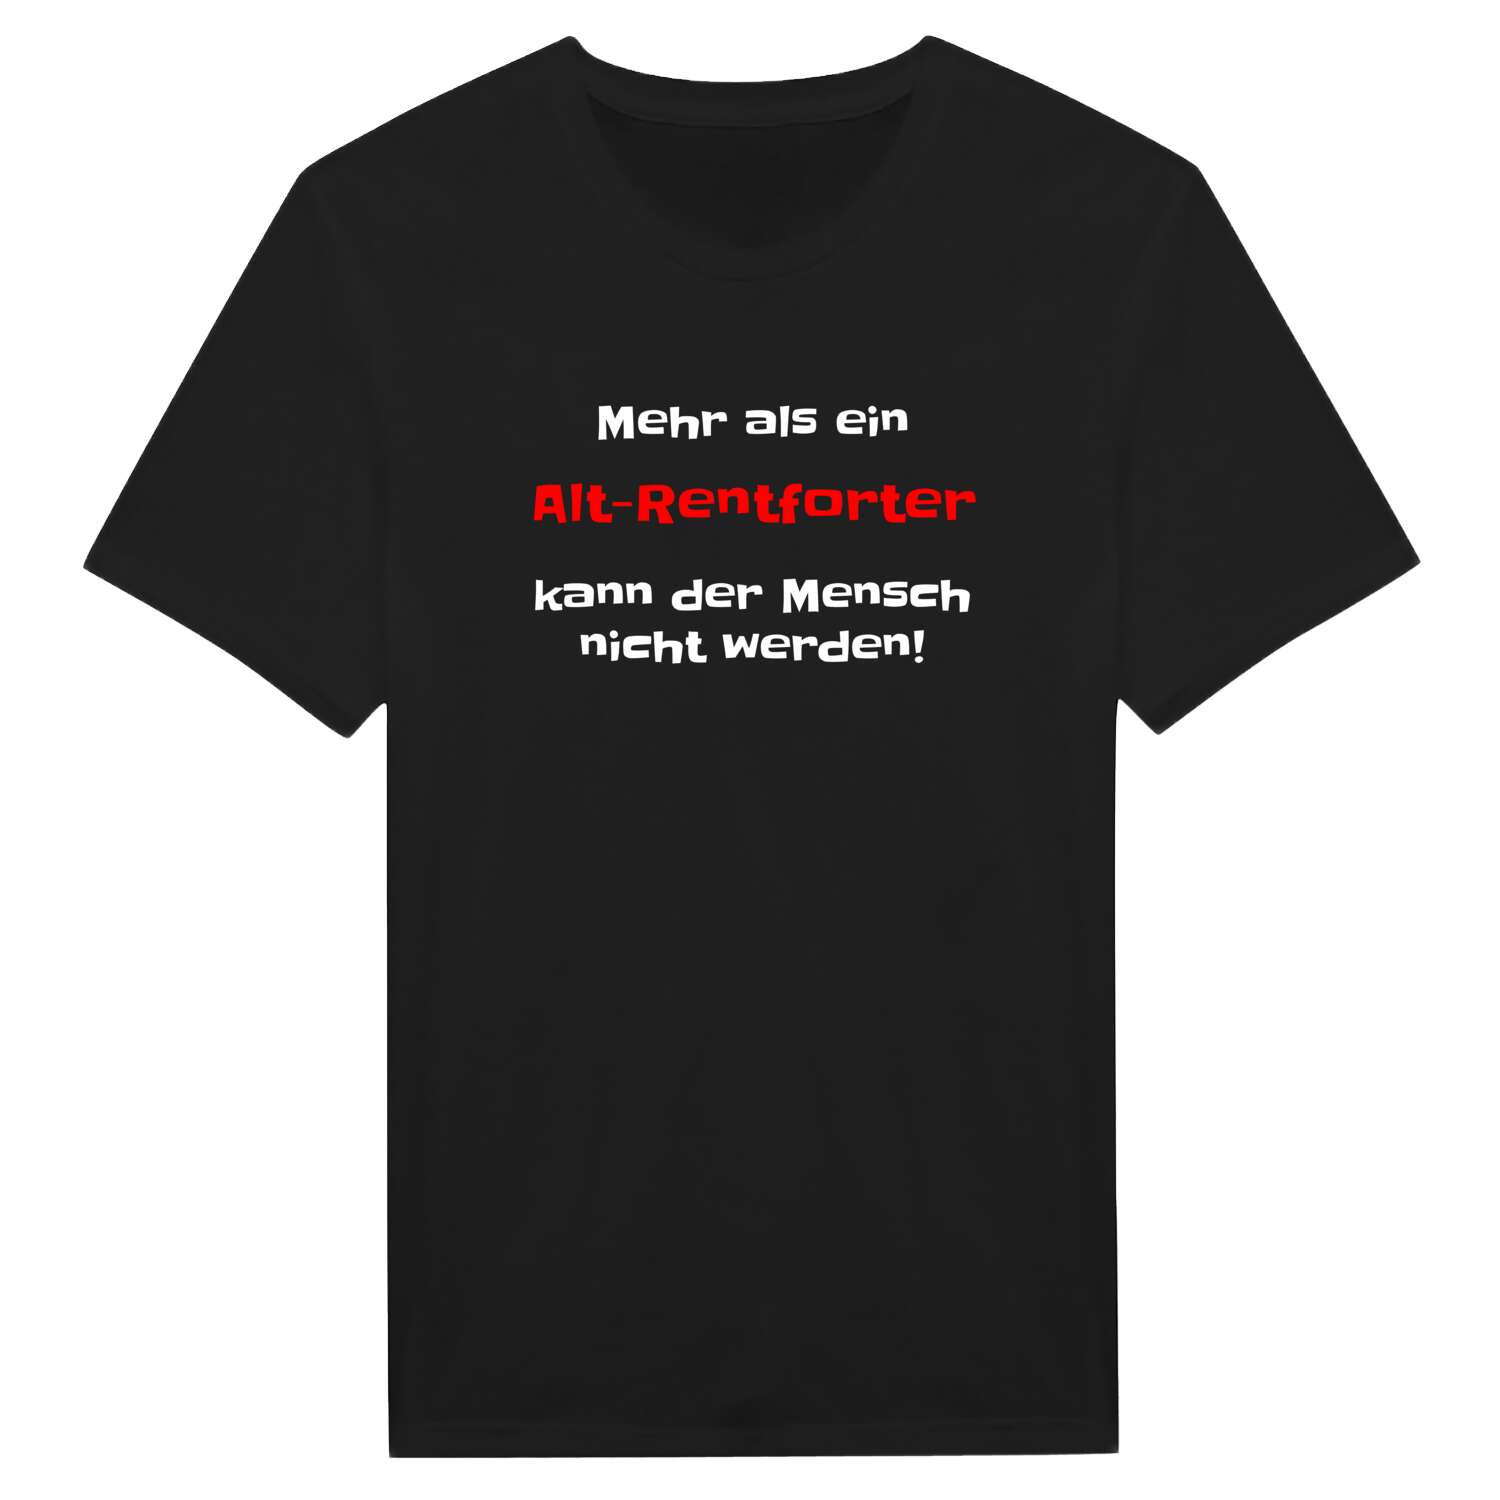 Alt-Rentfort T-Shirt »Mehr als ein«